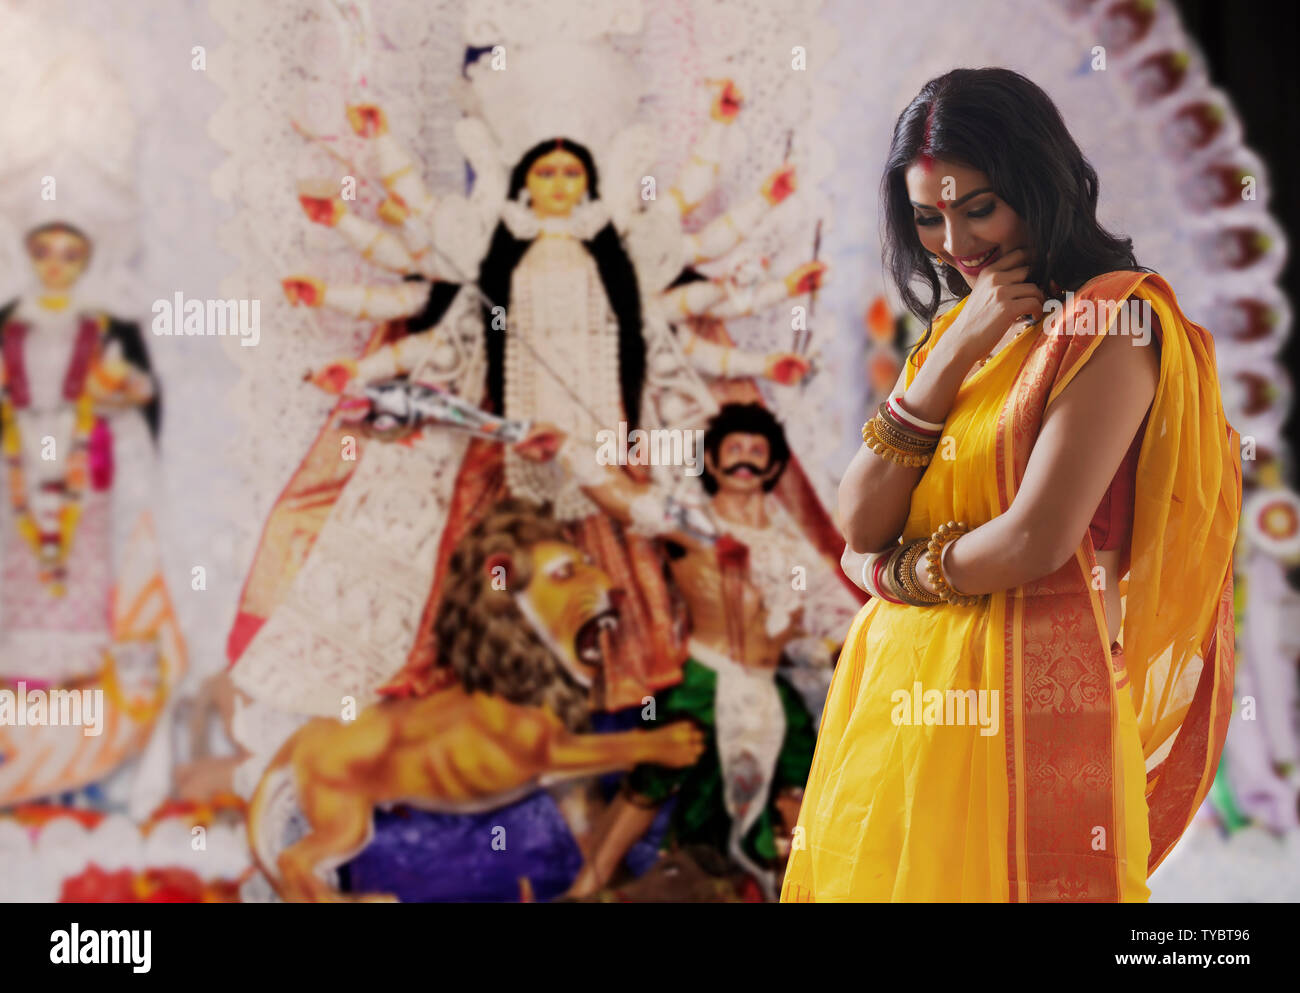 Ein Bengali-Mädchen, Das Den Roten Sari Und Die Goldenen Ornamente Trägt,  Die Auf Dem Dach Des Waldbungalows Posen Geben Stockfoto - Bild von  beiläufig, indisch: 230969622